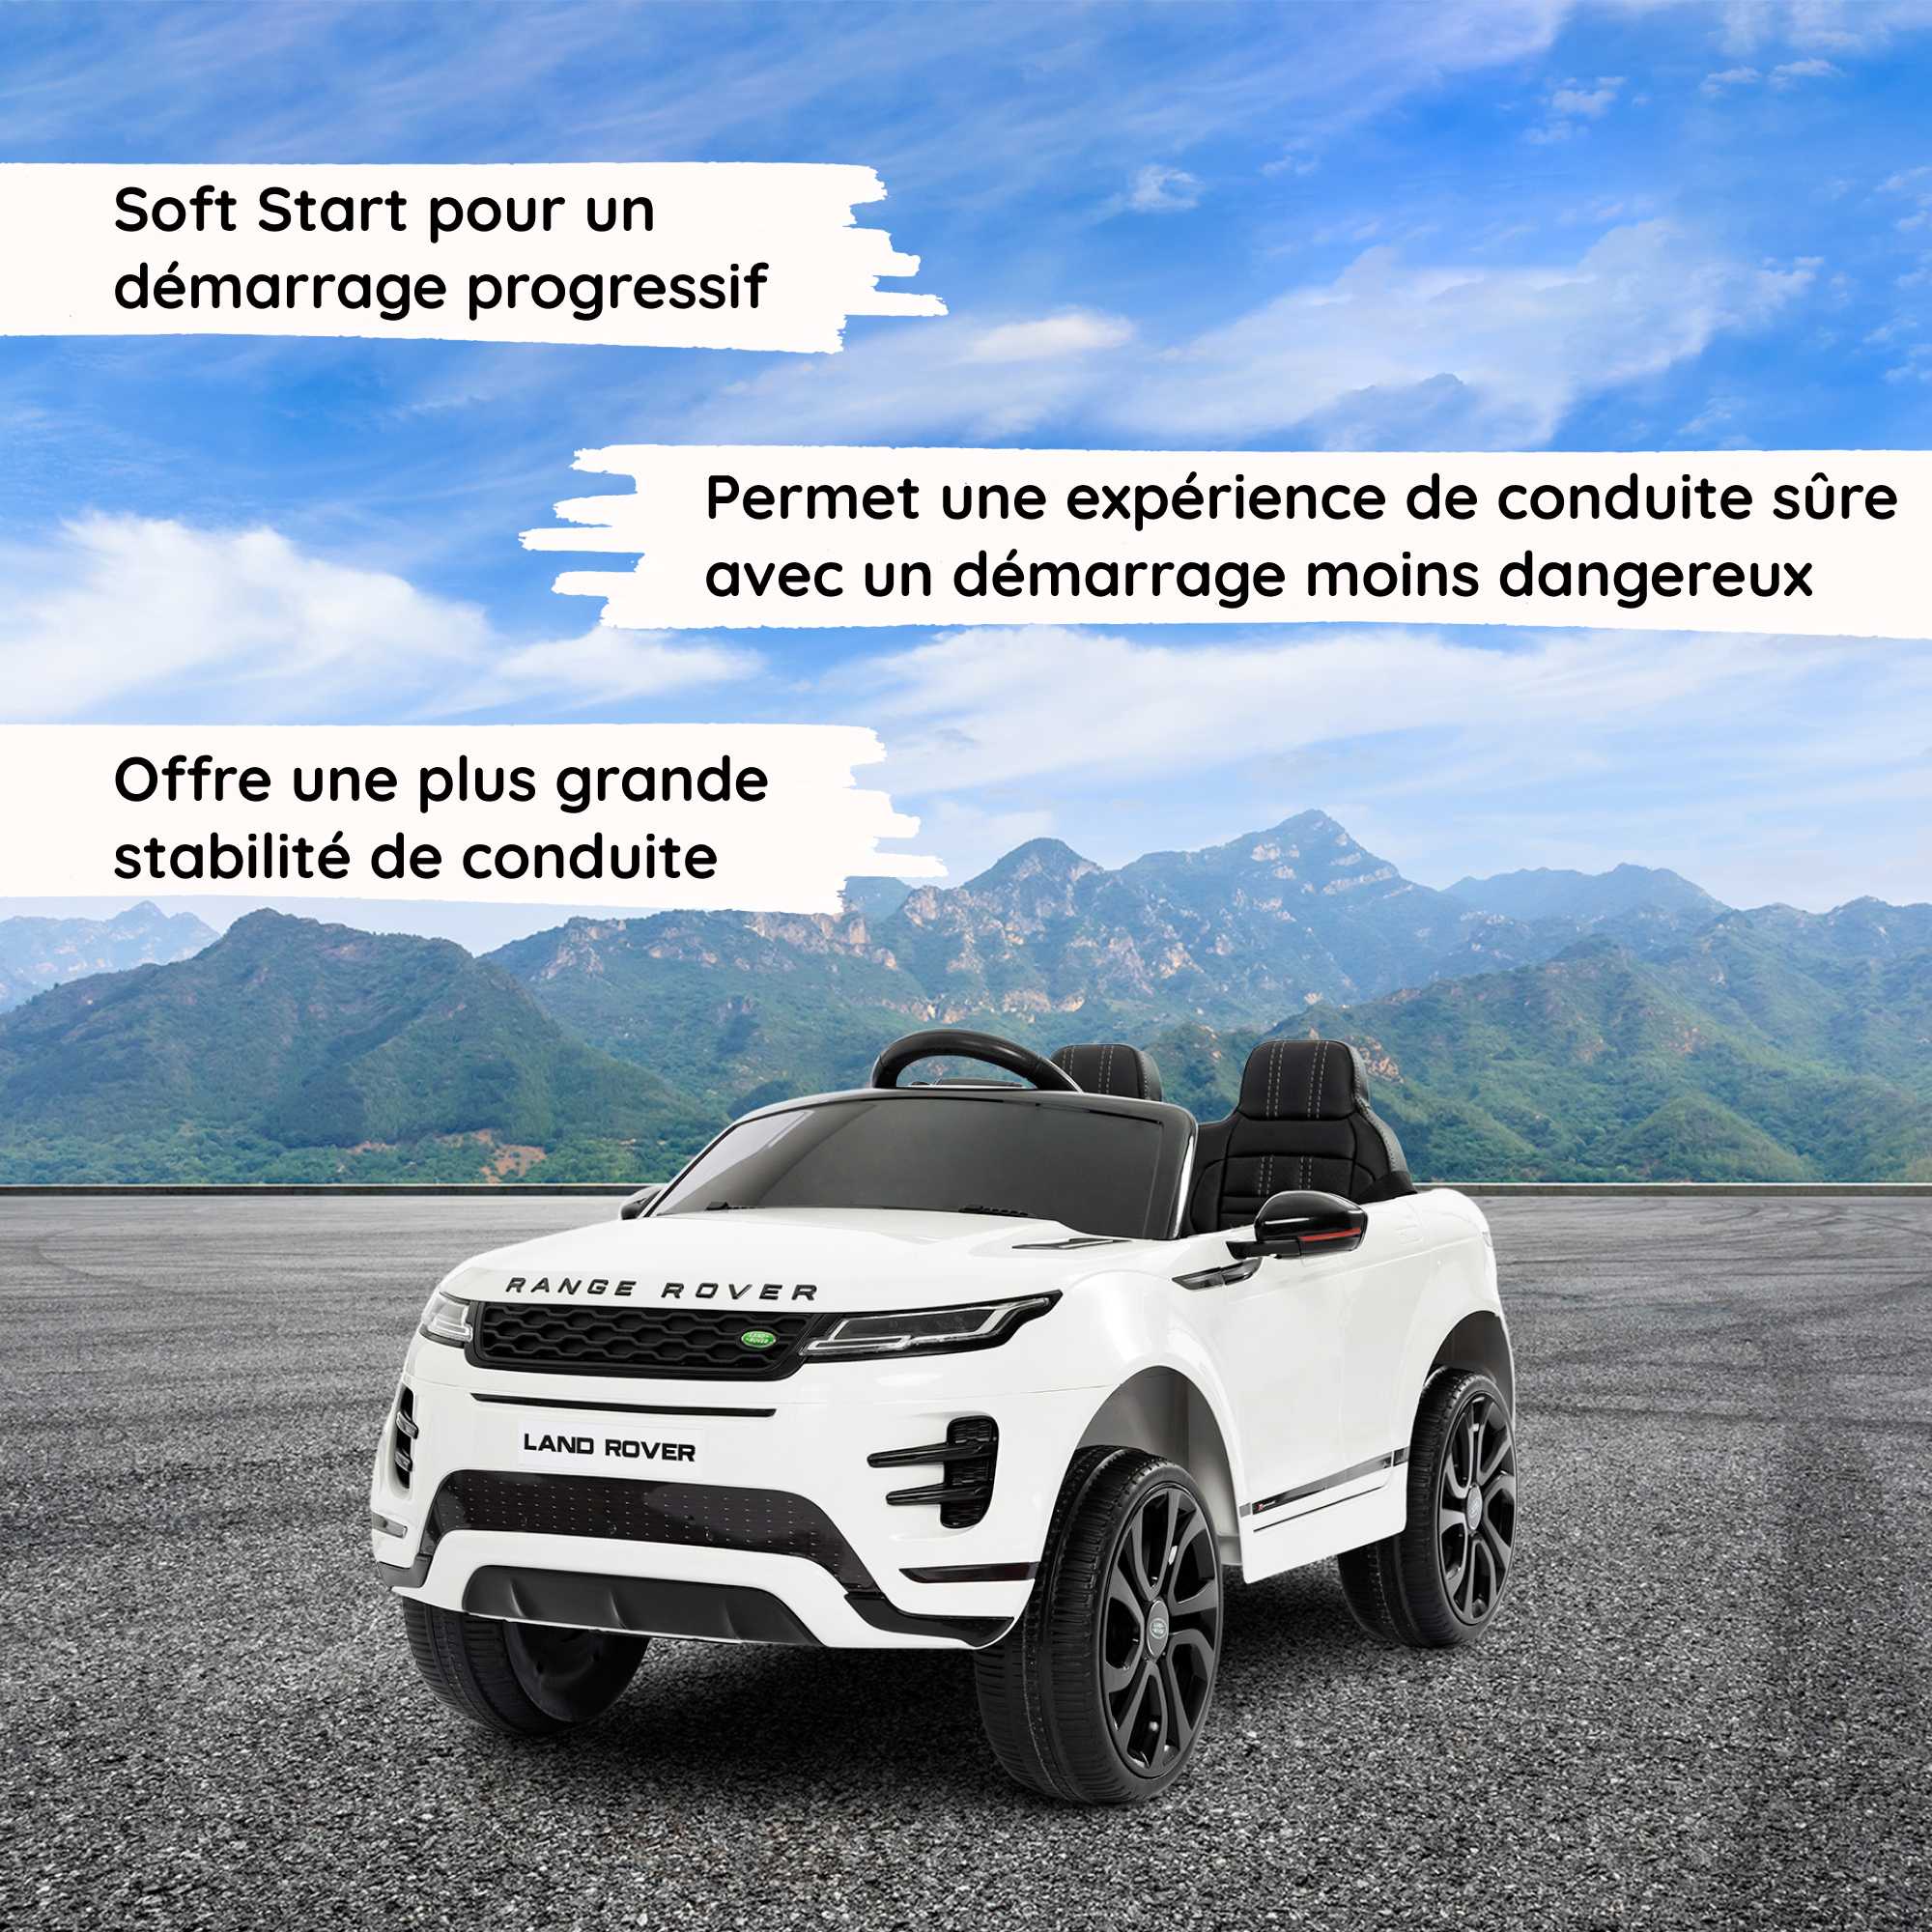 Range Rover Evoque blanc Soft Start